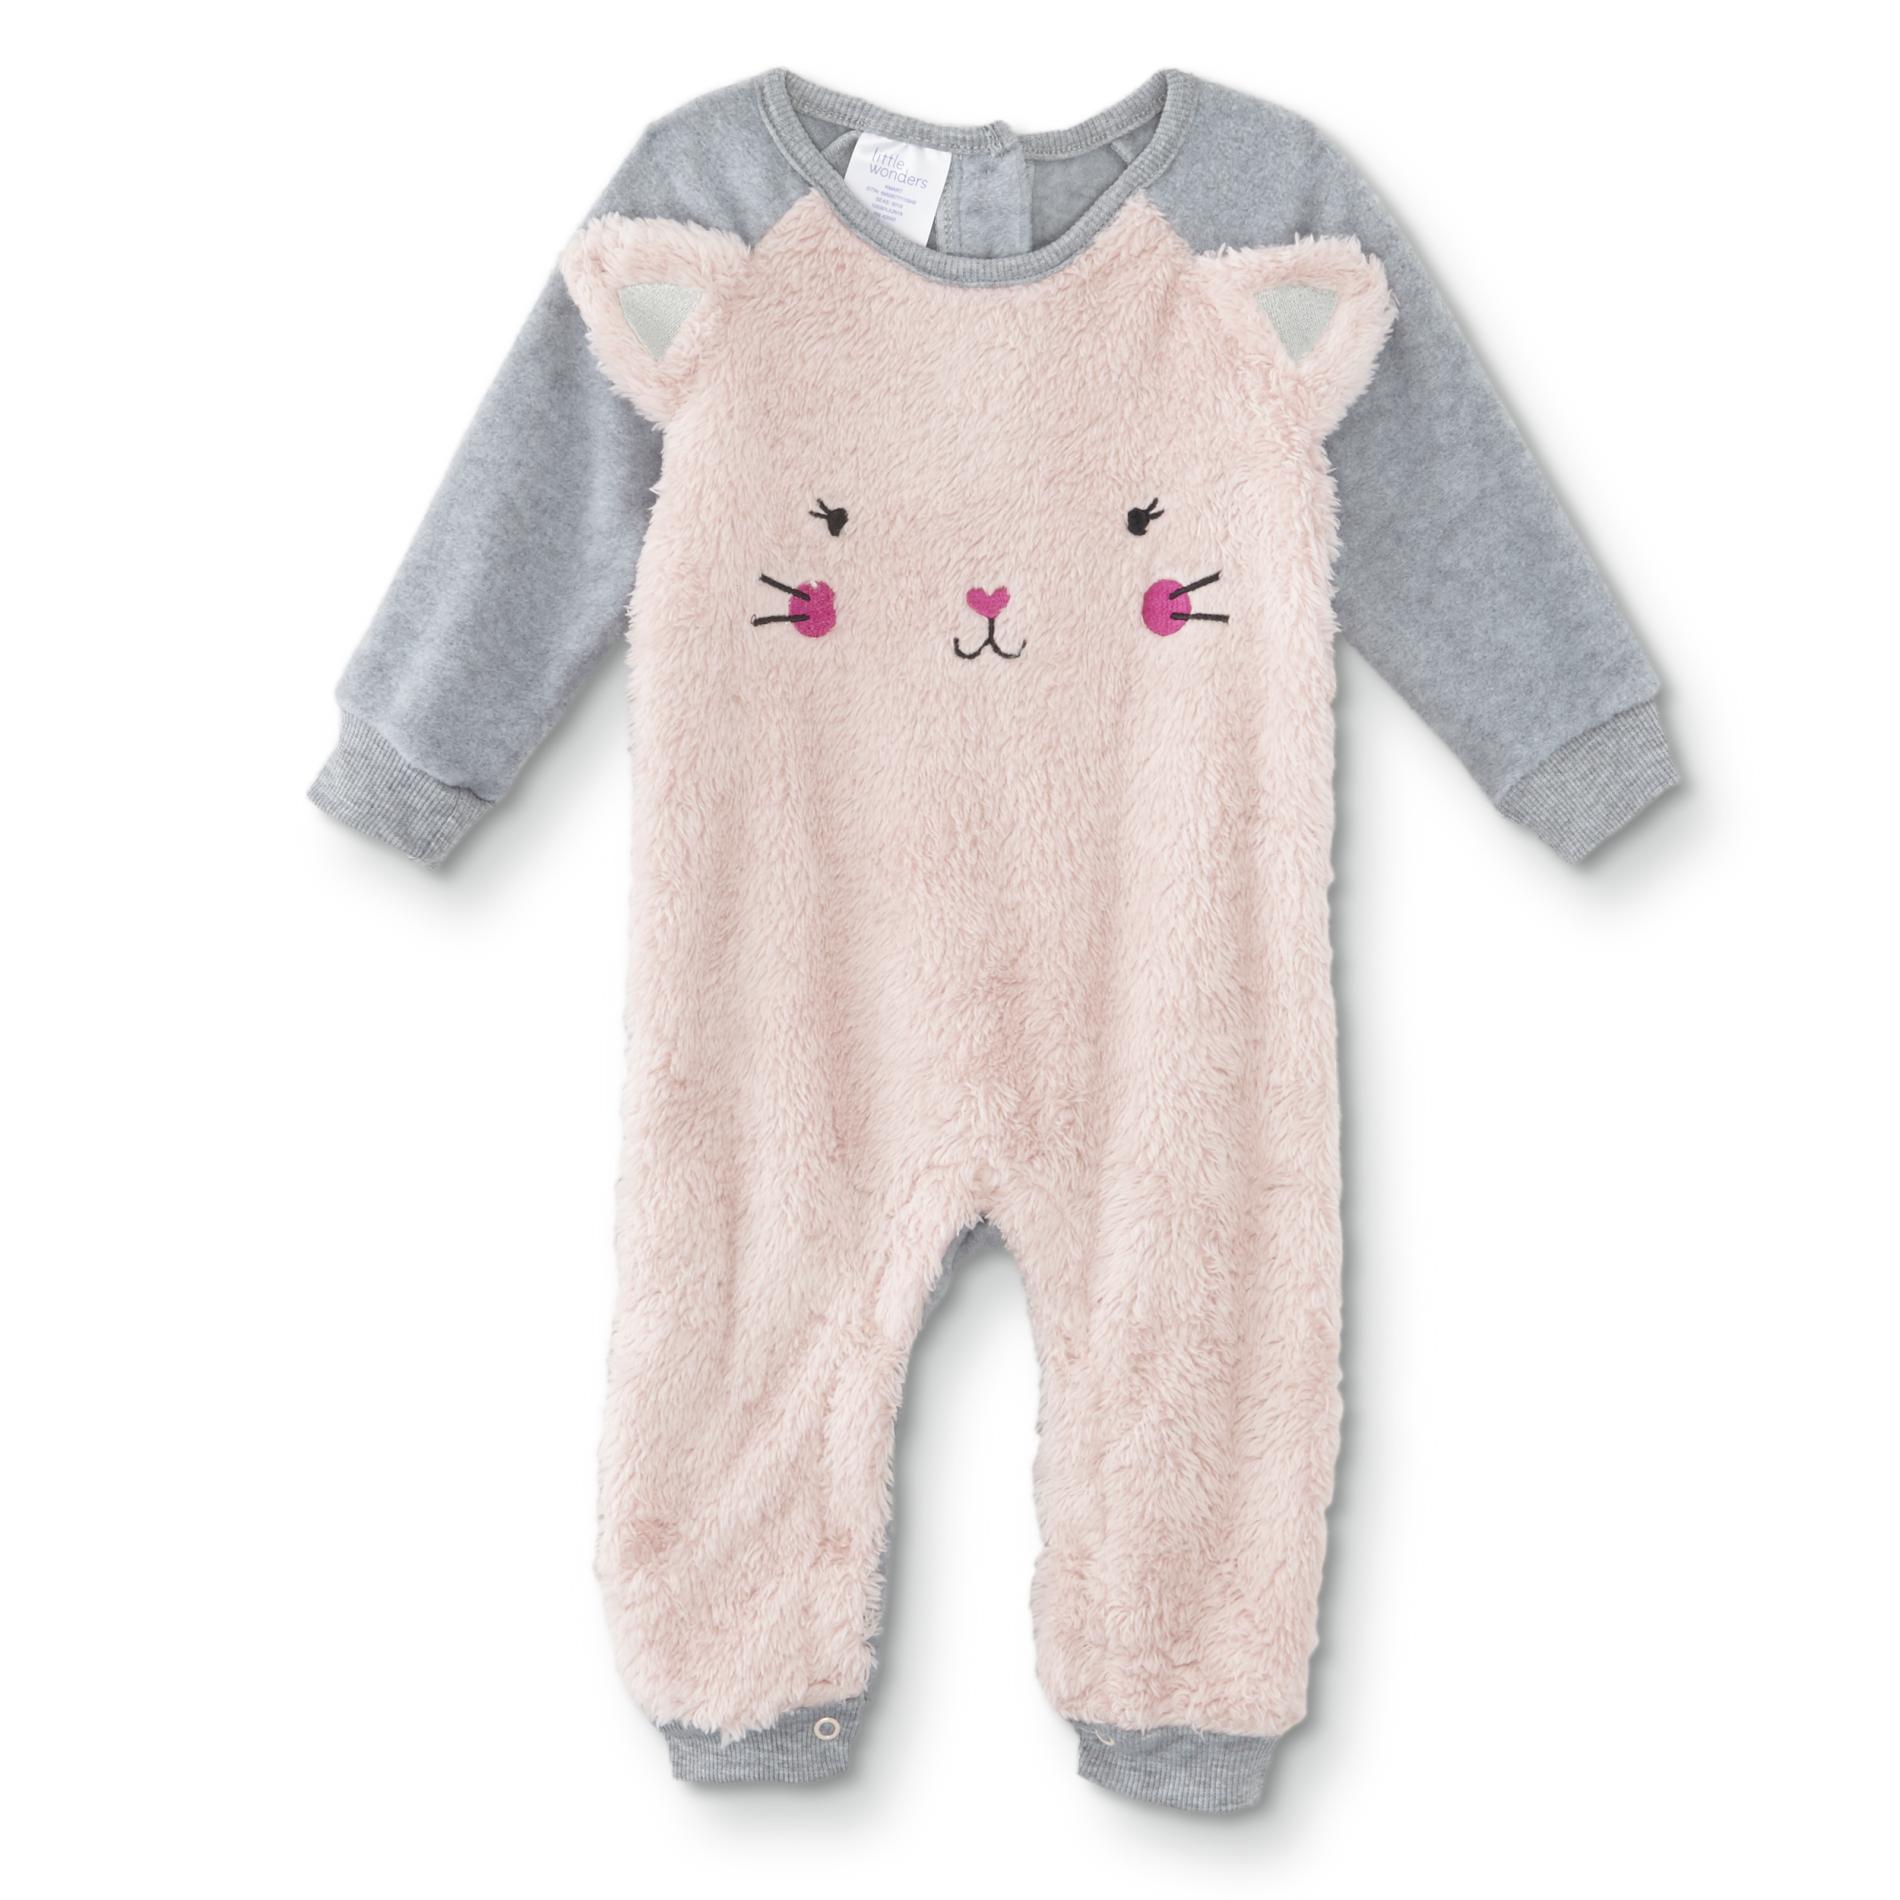 Little Wonders Infant Girls' Long-Sleeve Bodysuit - Cat